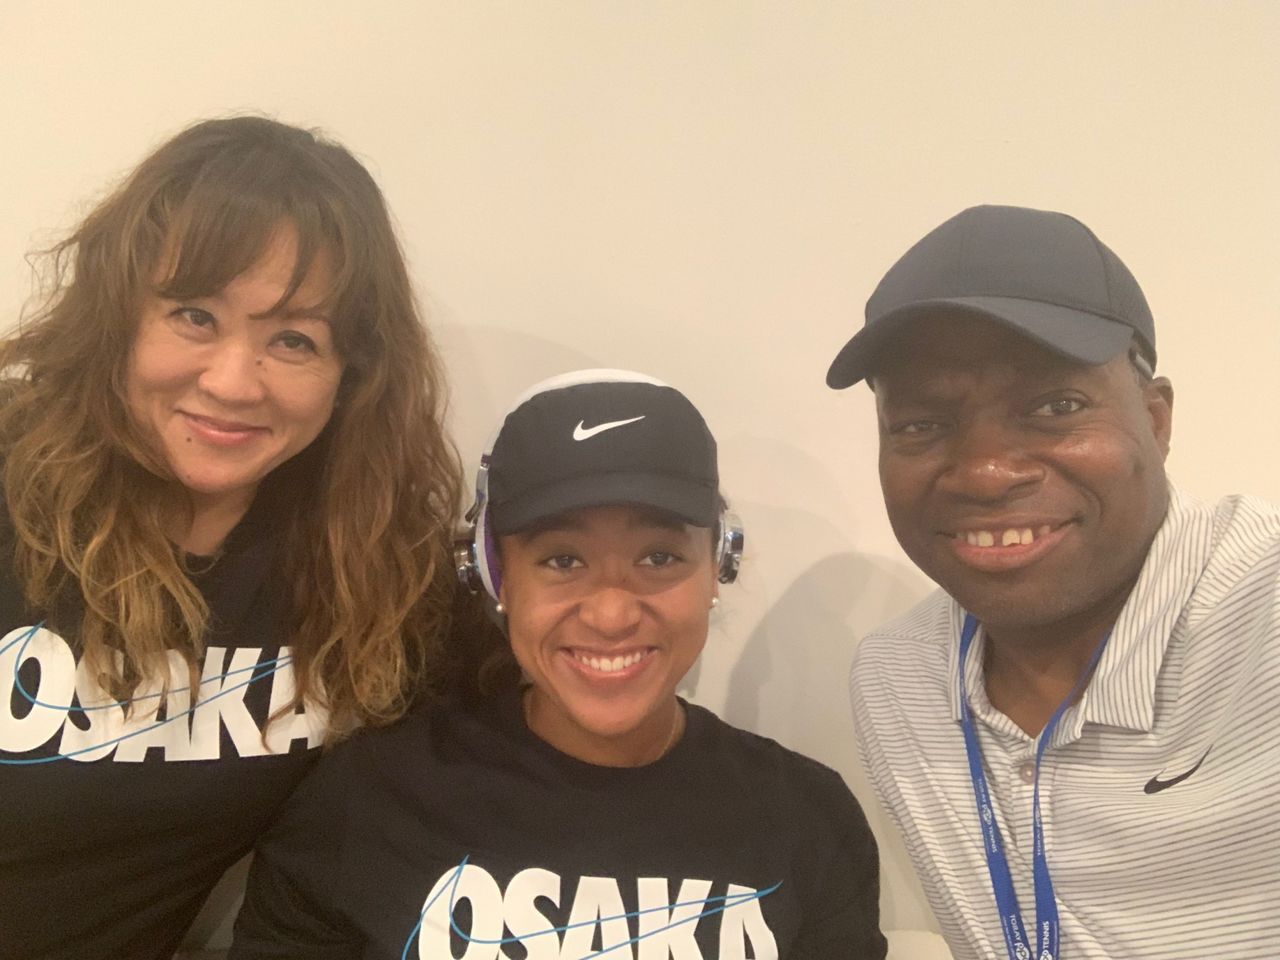 En septiembre de 2019 la familia Ōsaka celebró la victoria de Naomi en el campeonato Toray Pan Pacific, celebrado en Osaka. Desde la izquierda, Tamaki, Naomi y Max. (Imagen cortesía de Ōsaka Tamaki)